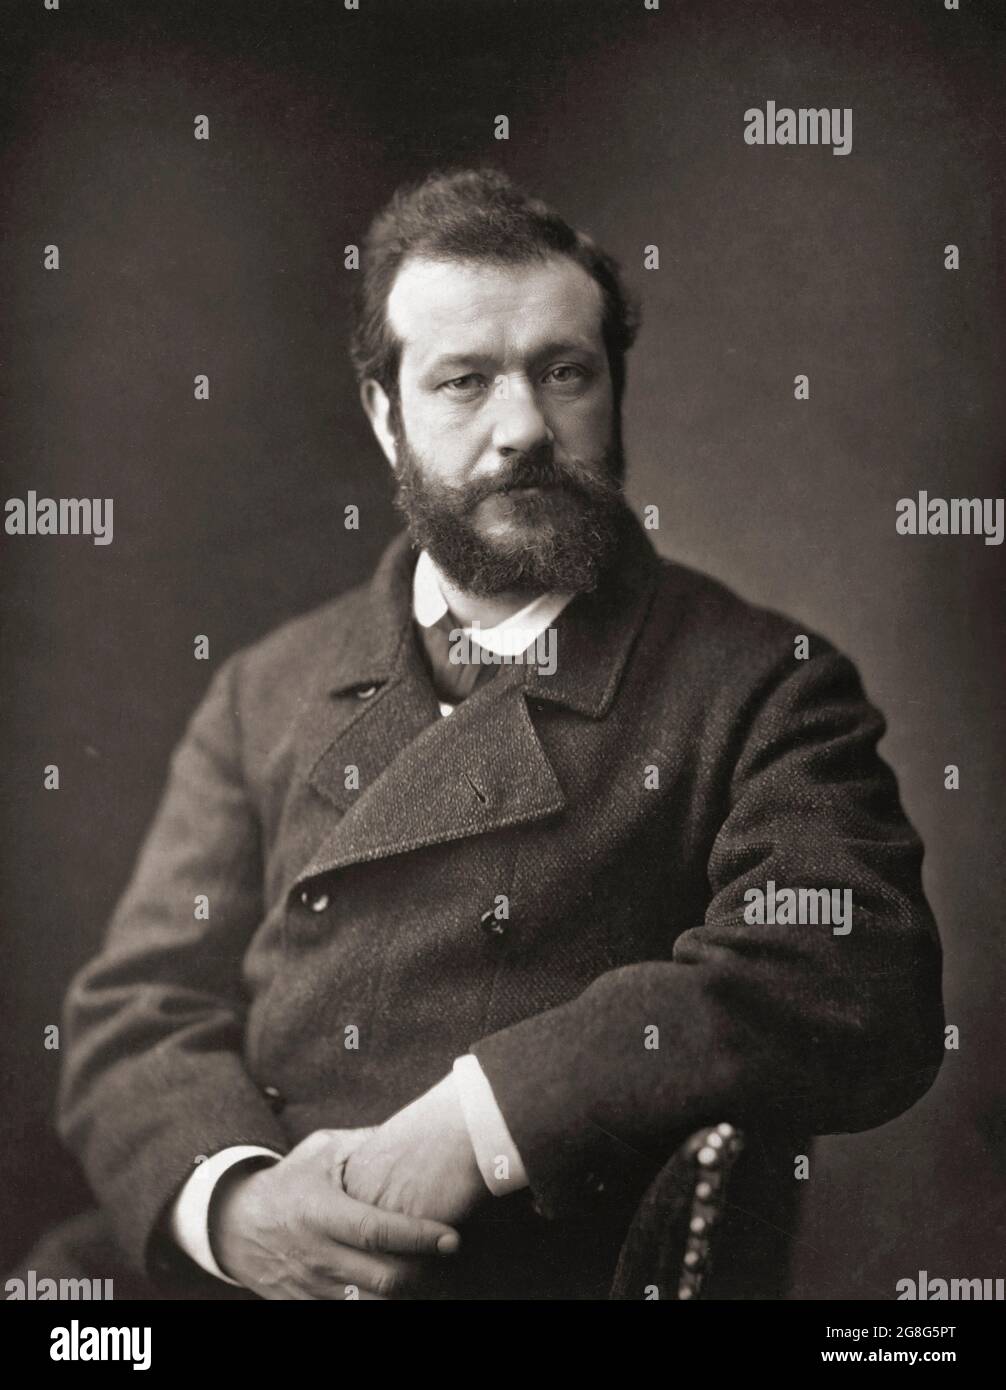 Félix Henri Bracquemond, 1833 – 1914. Französischer Künstler und Radierer, der mehrere impressionistische Künstler, darunter Degas und Pissarro, ermutigte, mit Drucktechniken zu experimentieren. Nach einem Photogaph von Emile Courtin, um 1878. Stockfoto